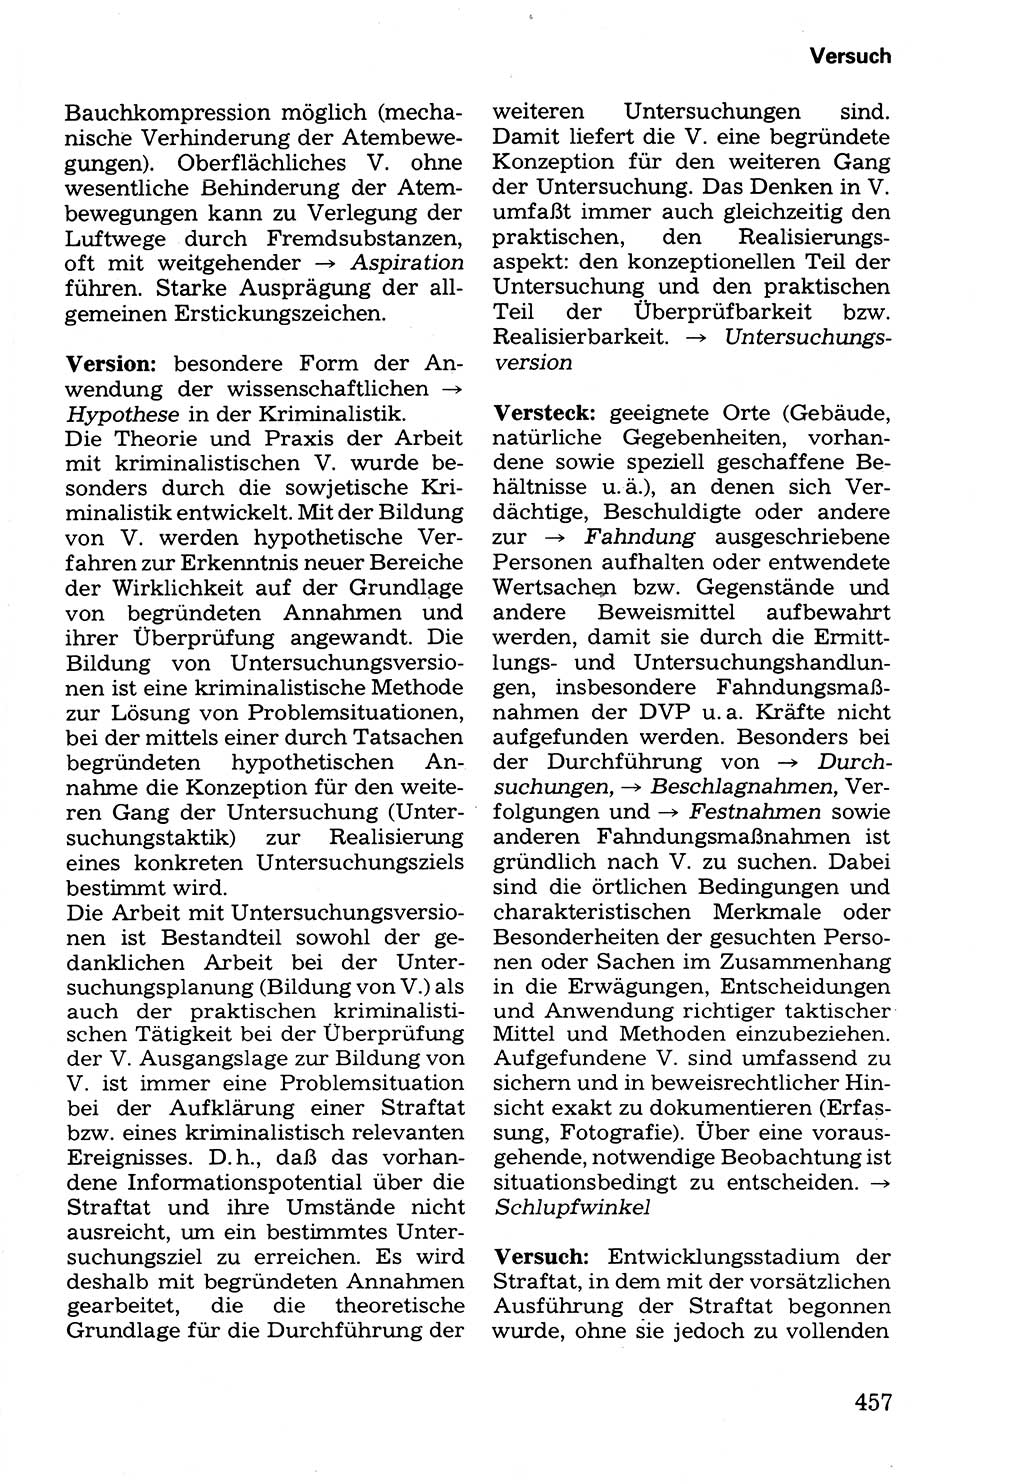 Wörterbuch der sozialistischen Kriminalistik [Deutsche Demokratische Republik (DDR)] 1981, Seite 457 (Wb. soz. Krim. DDR 1981, S. 457)